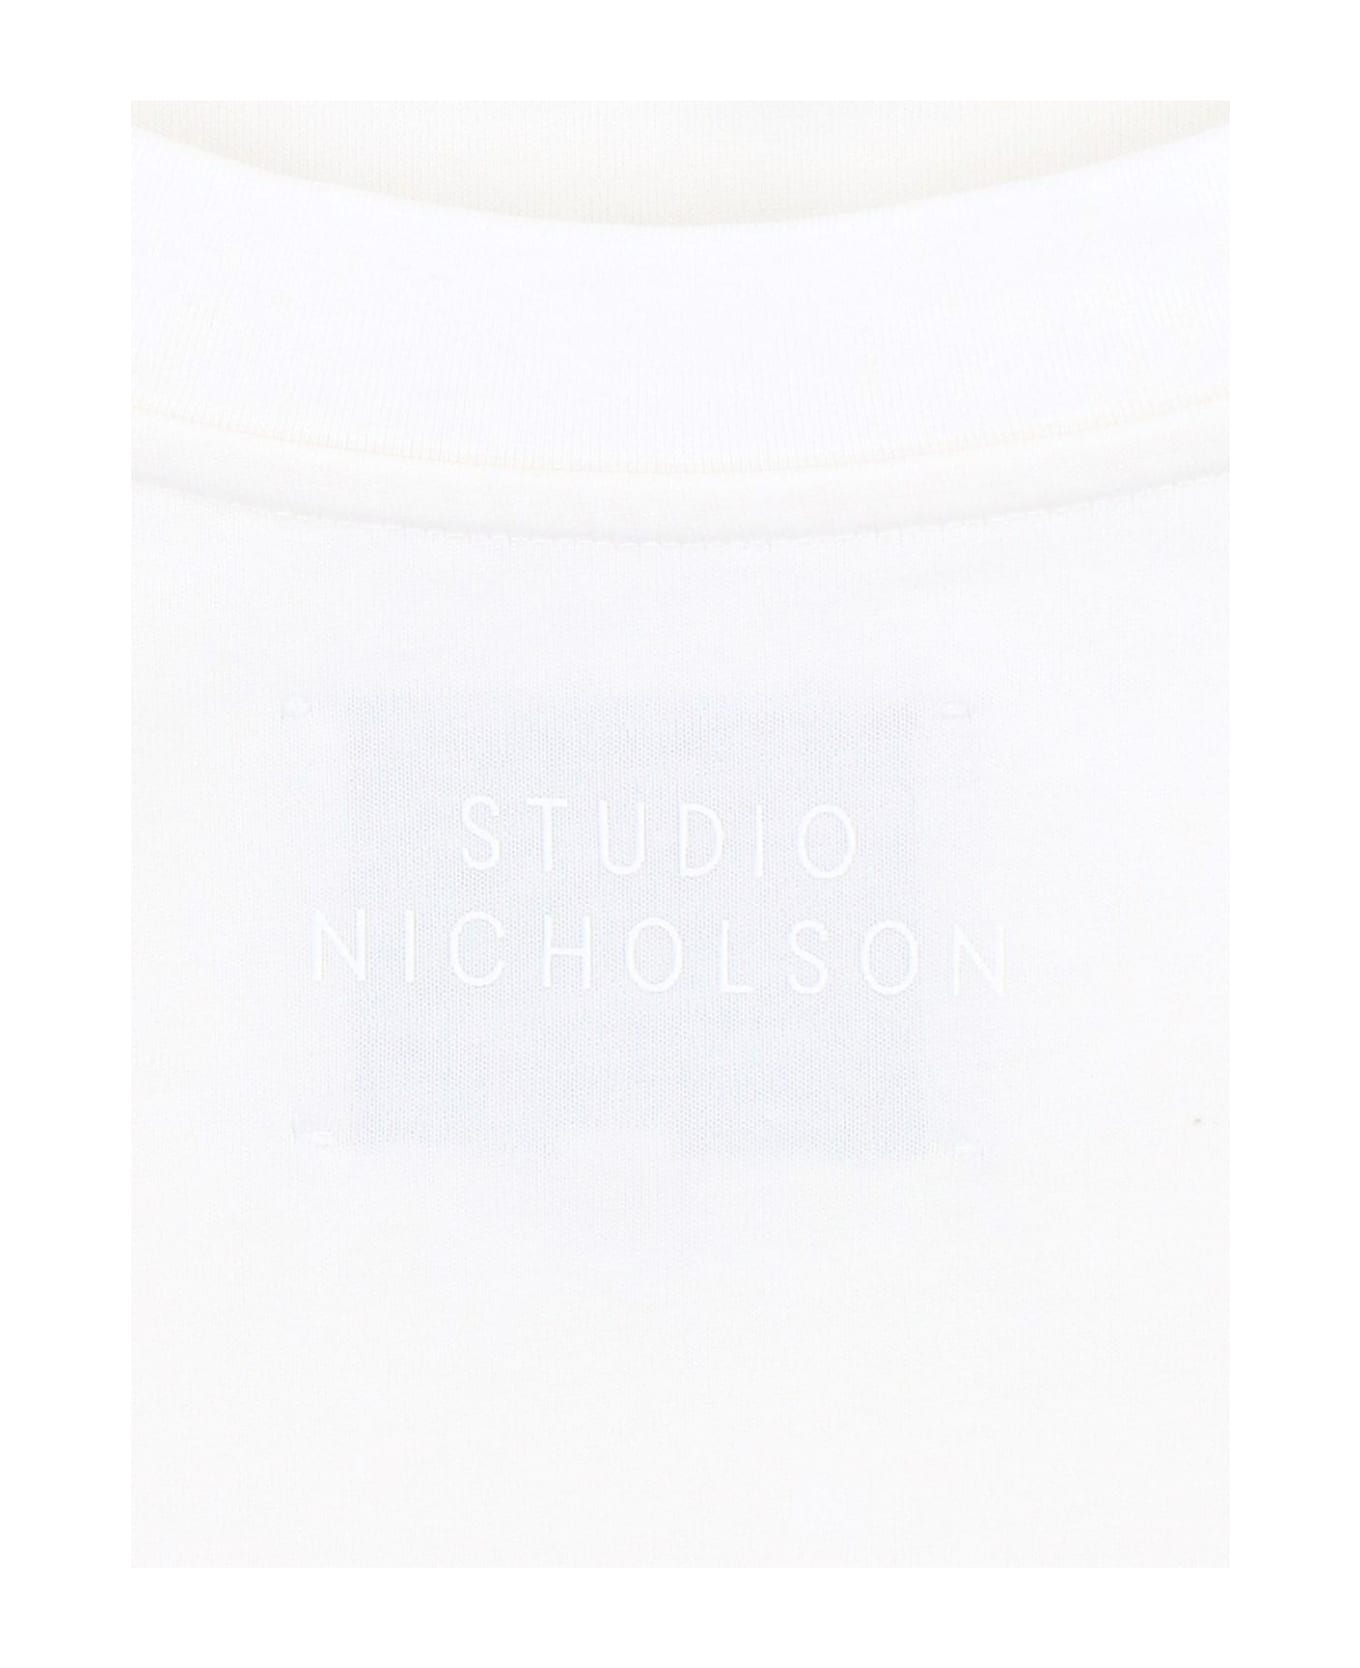 Studio Nicholson Oversize T-shirt - WHITE